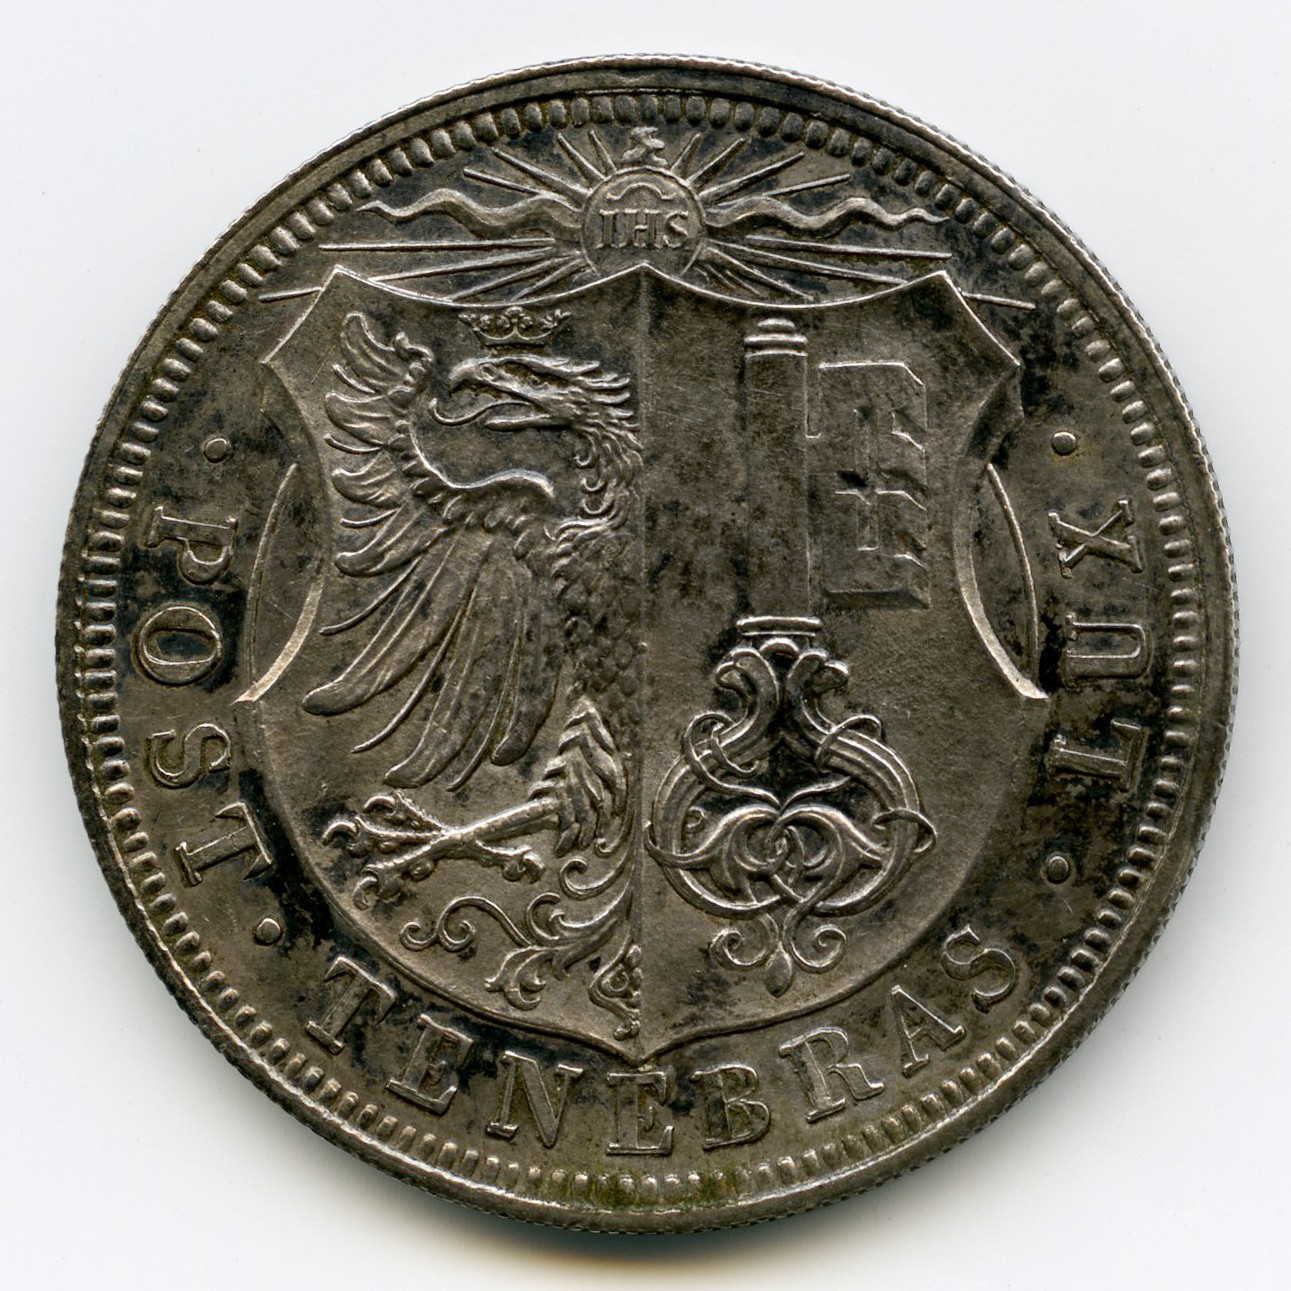 Suisse - 5 Francs - 1848 avers